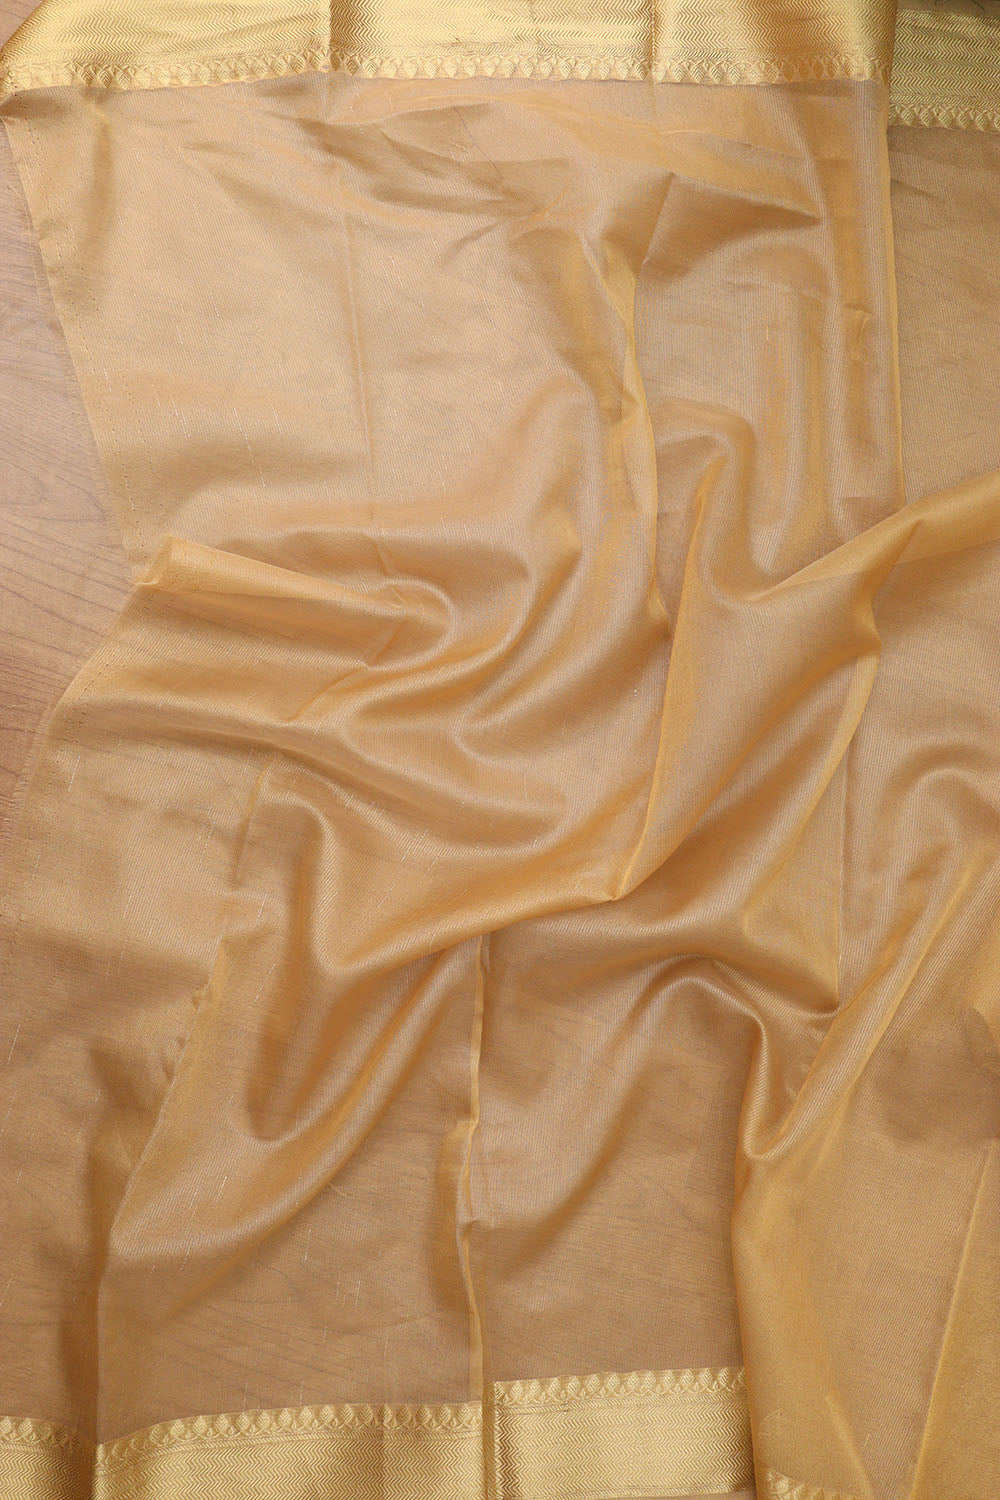 Exquisite Golden Banarasi Tissue Saree - Timeless Elegance - Luxurion World